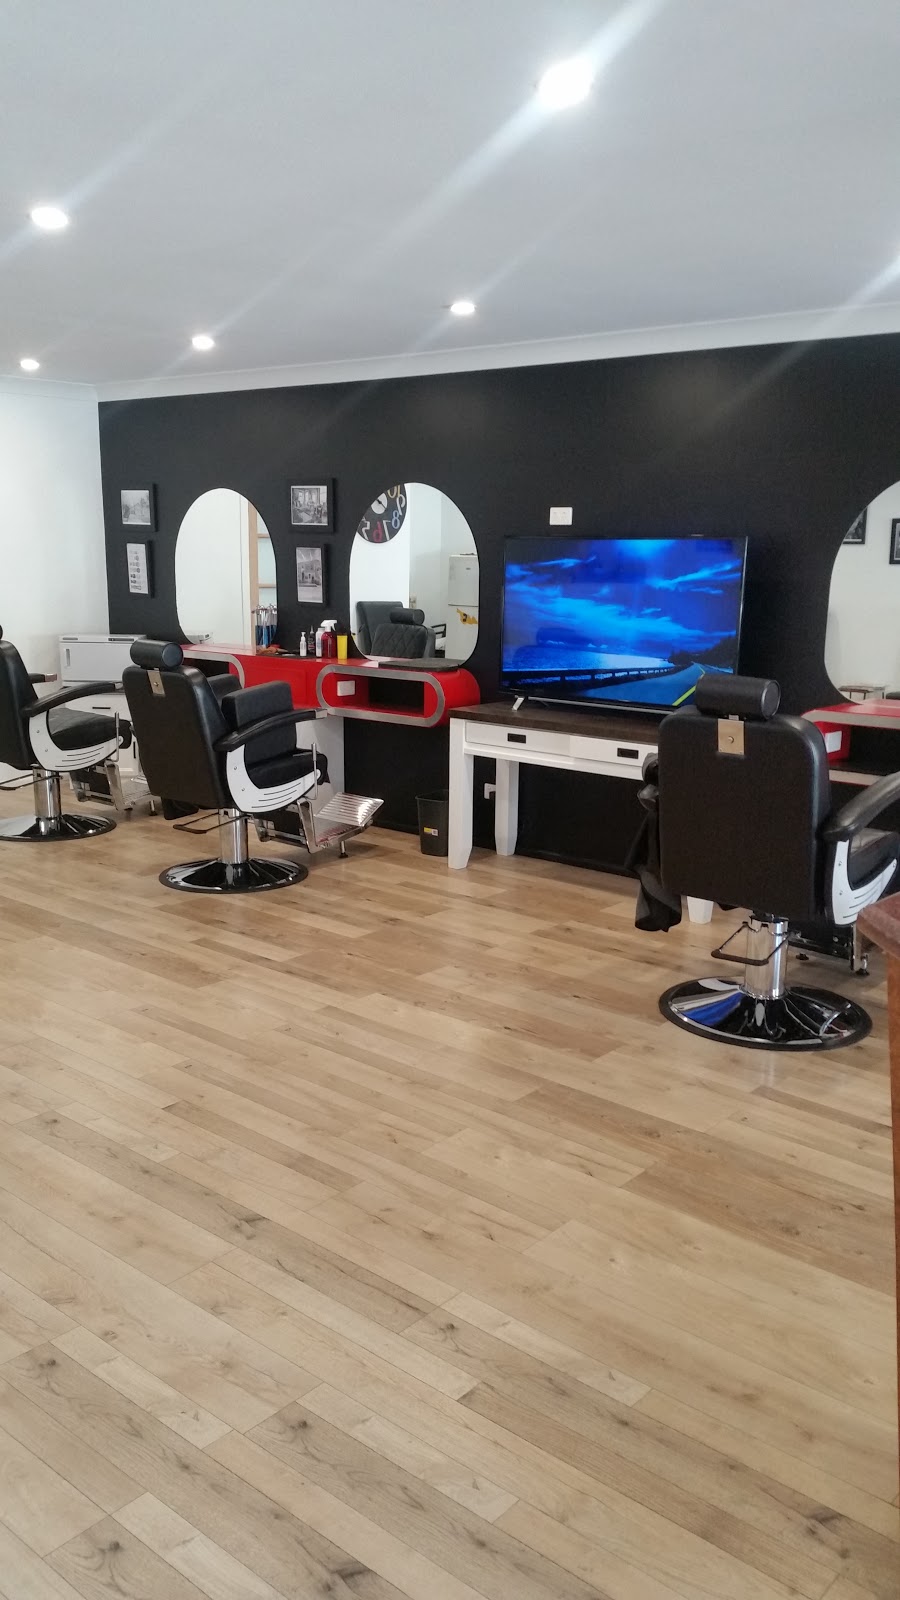 Jeannies Barber Shop | hair care | 1 Tallai Rd, Tallai QLD 4213, Australia